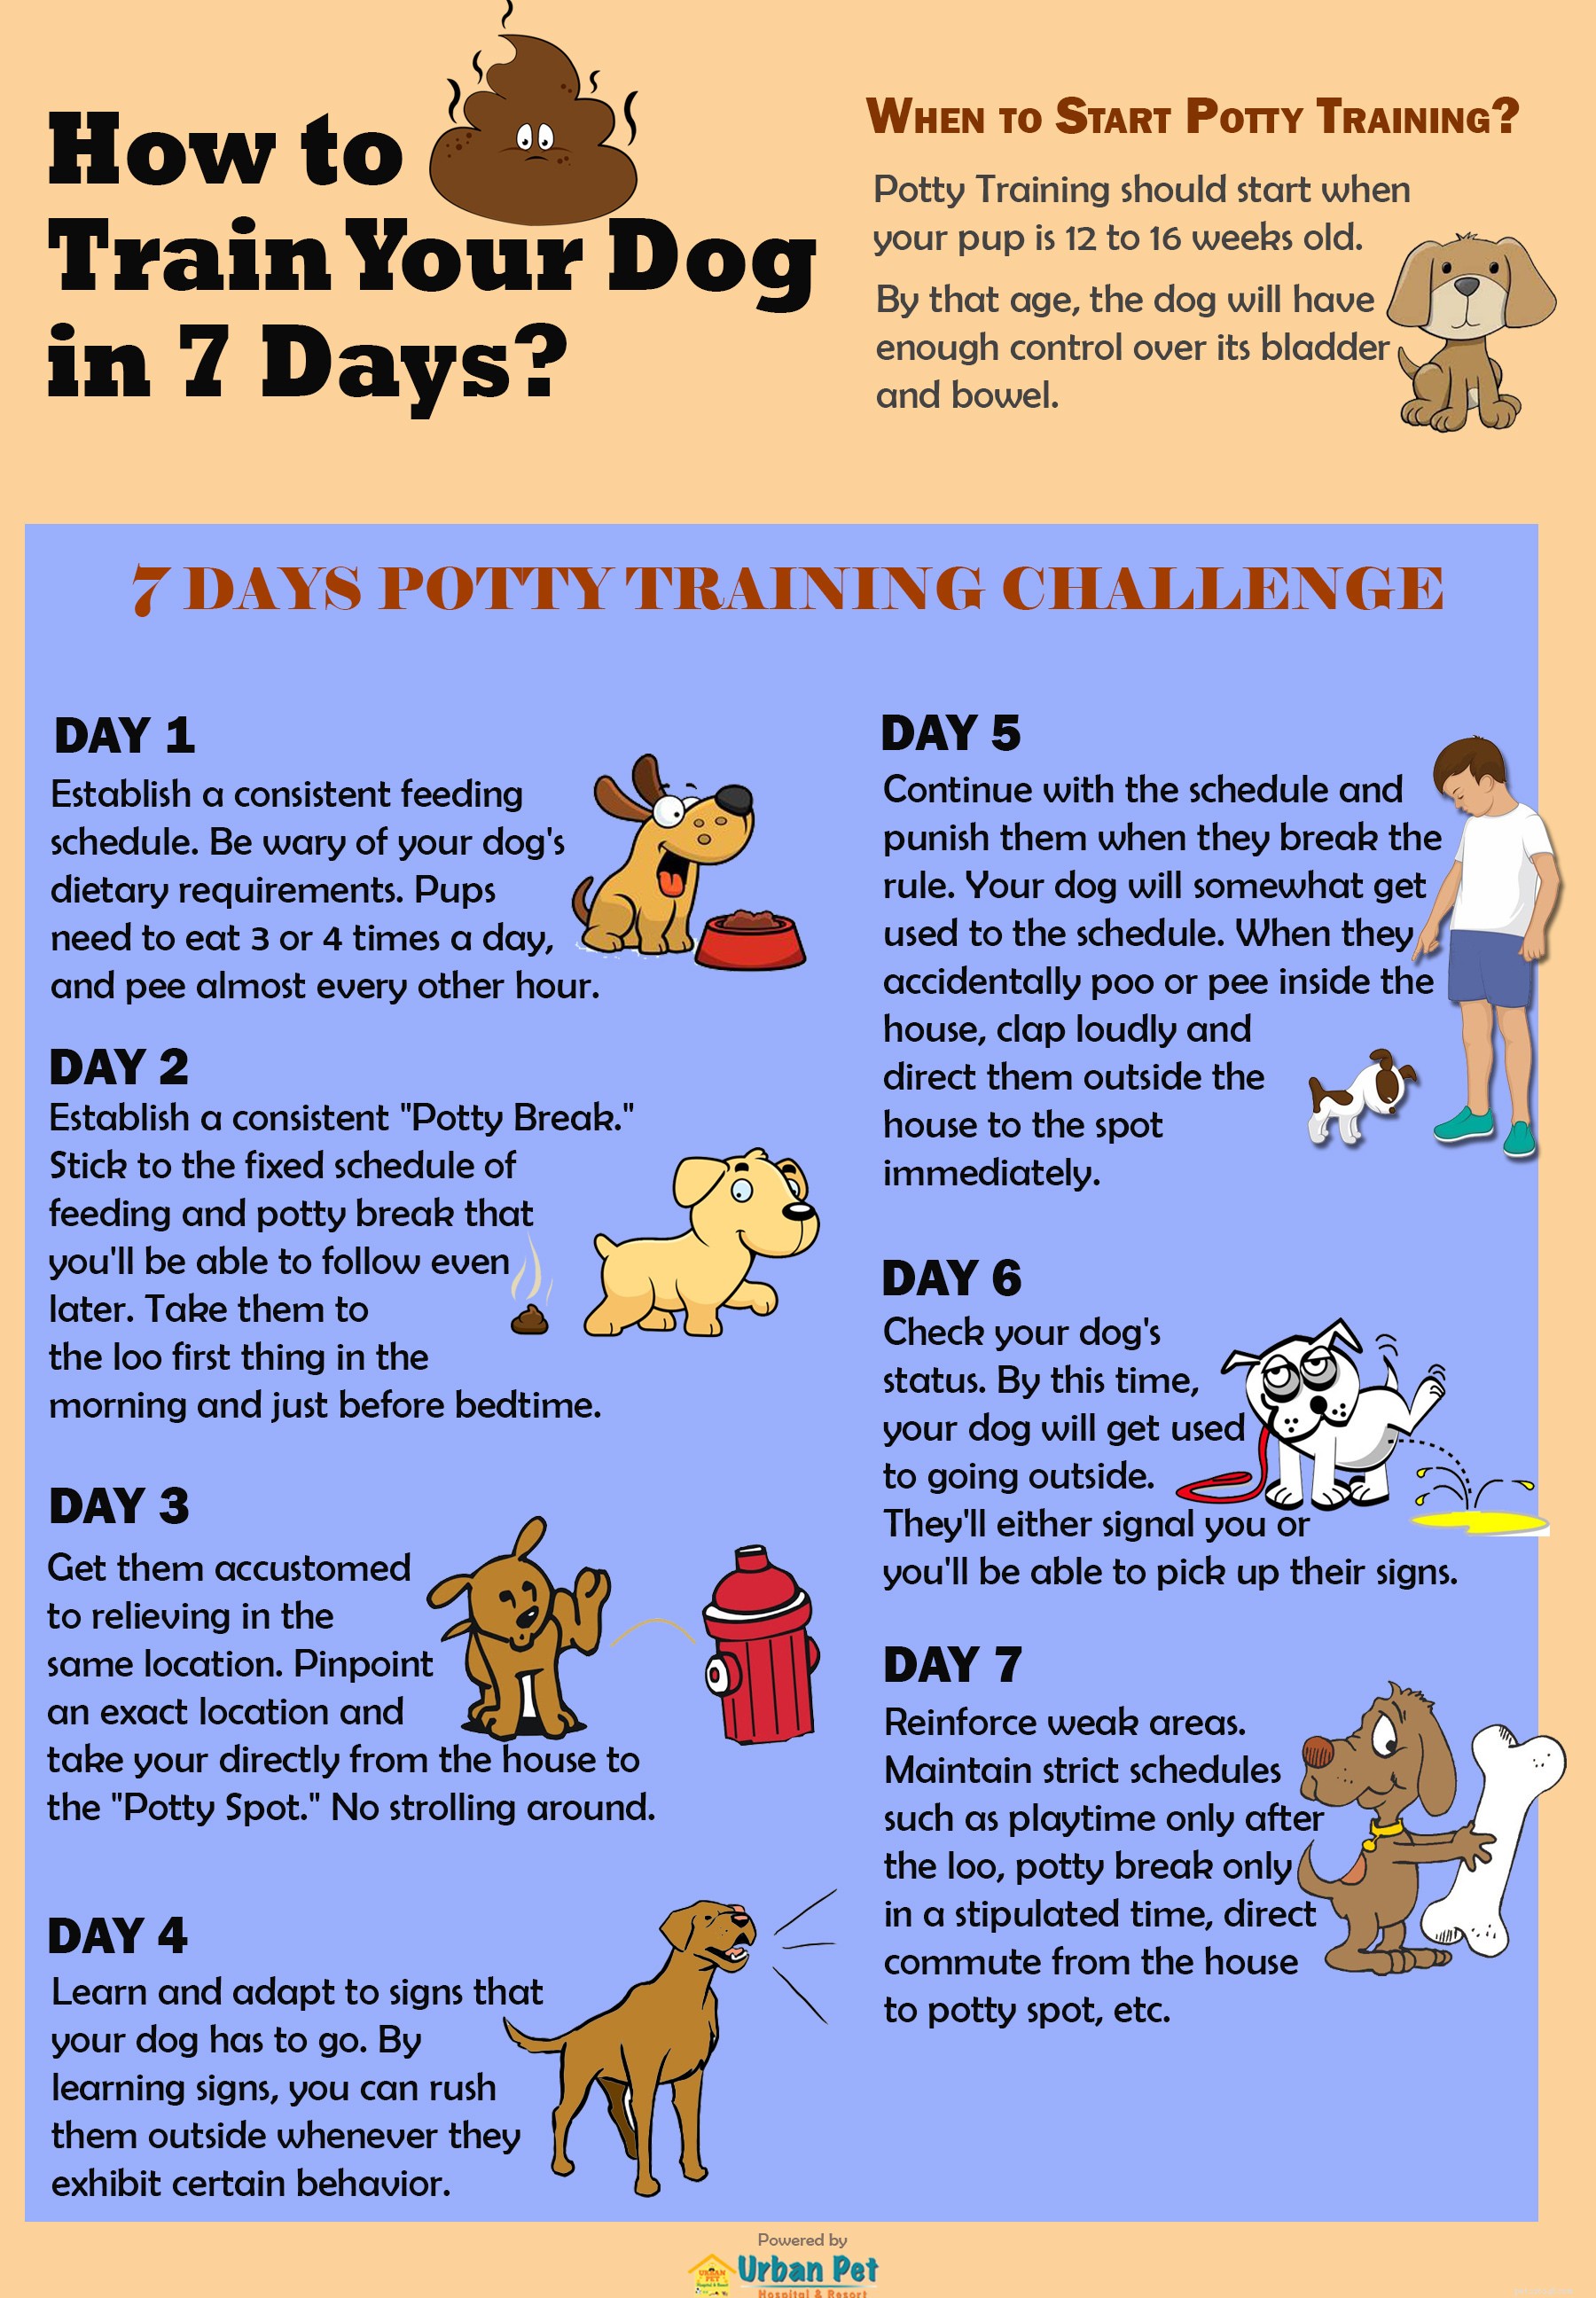 Come faccio ad addestrare il mio cane al vasino in soli 7 giorni?